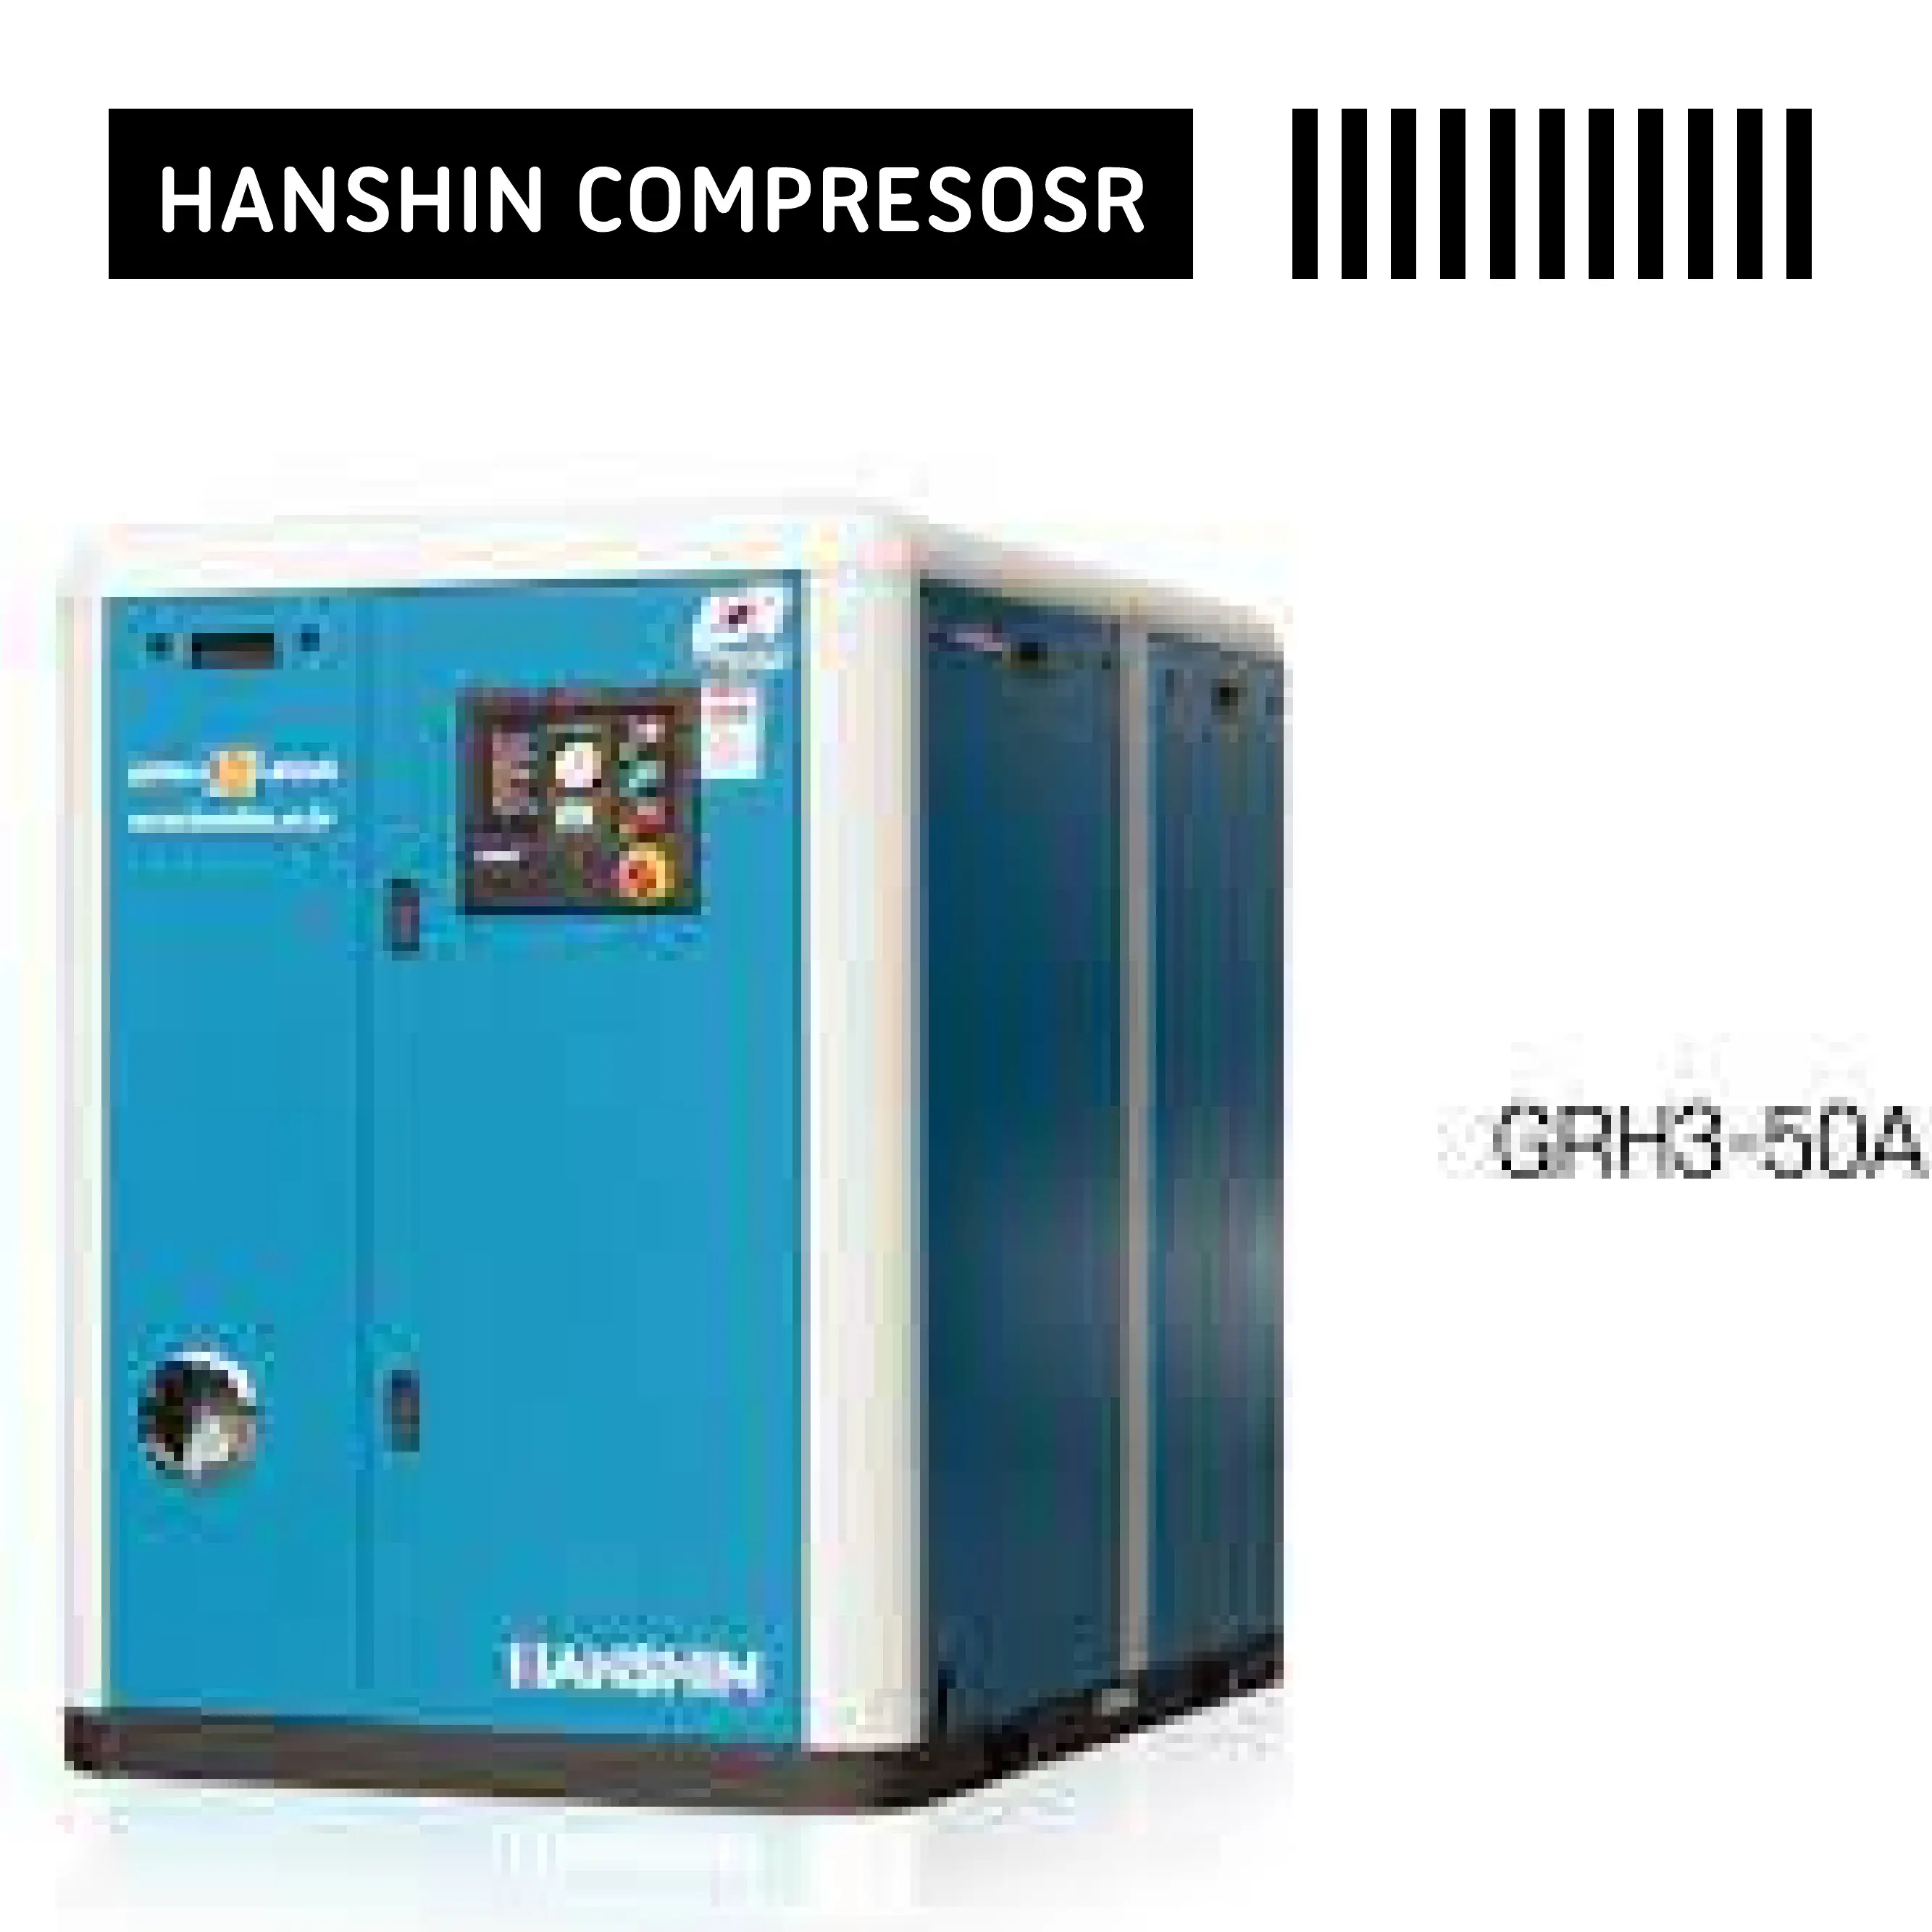 Hanshin compressor GRH3-75A feito na coréia